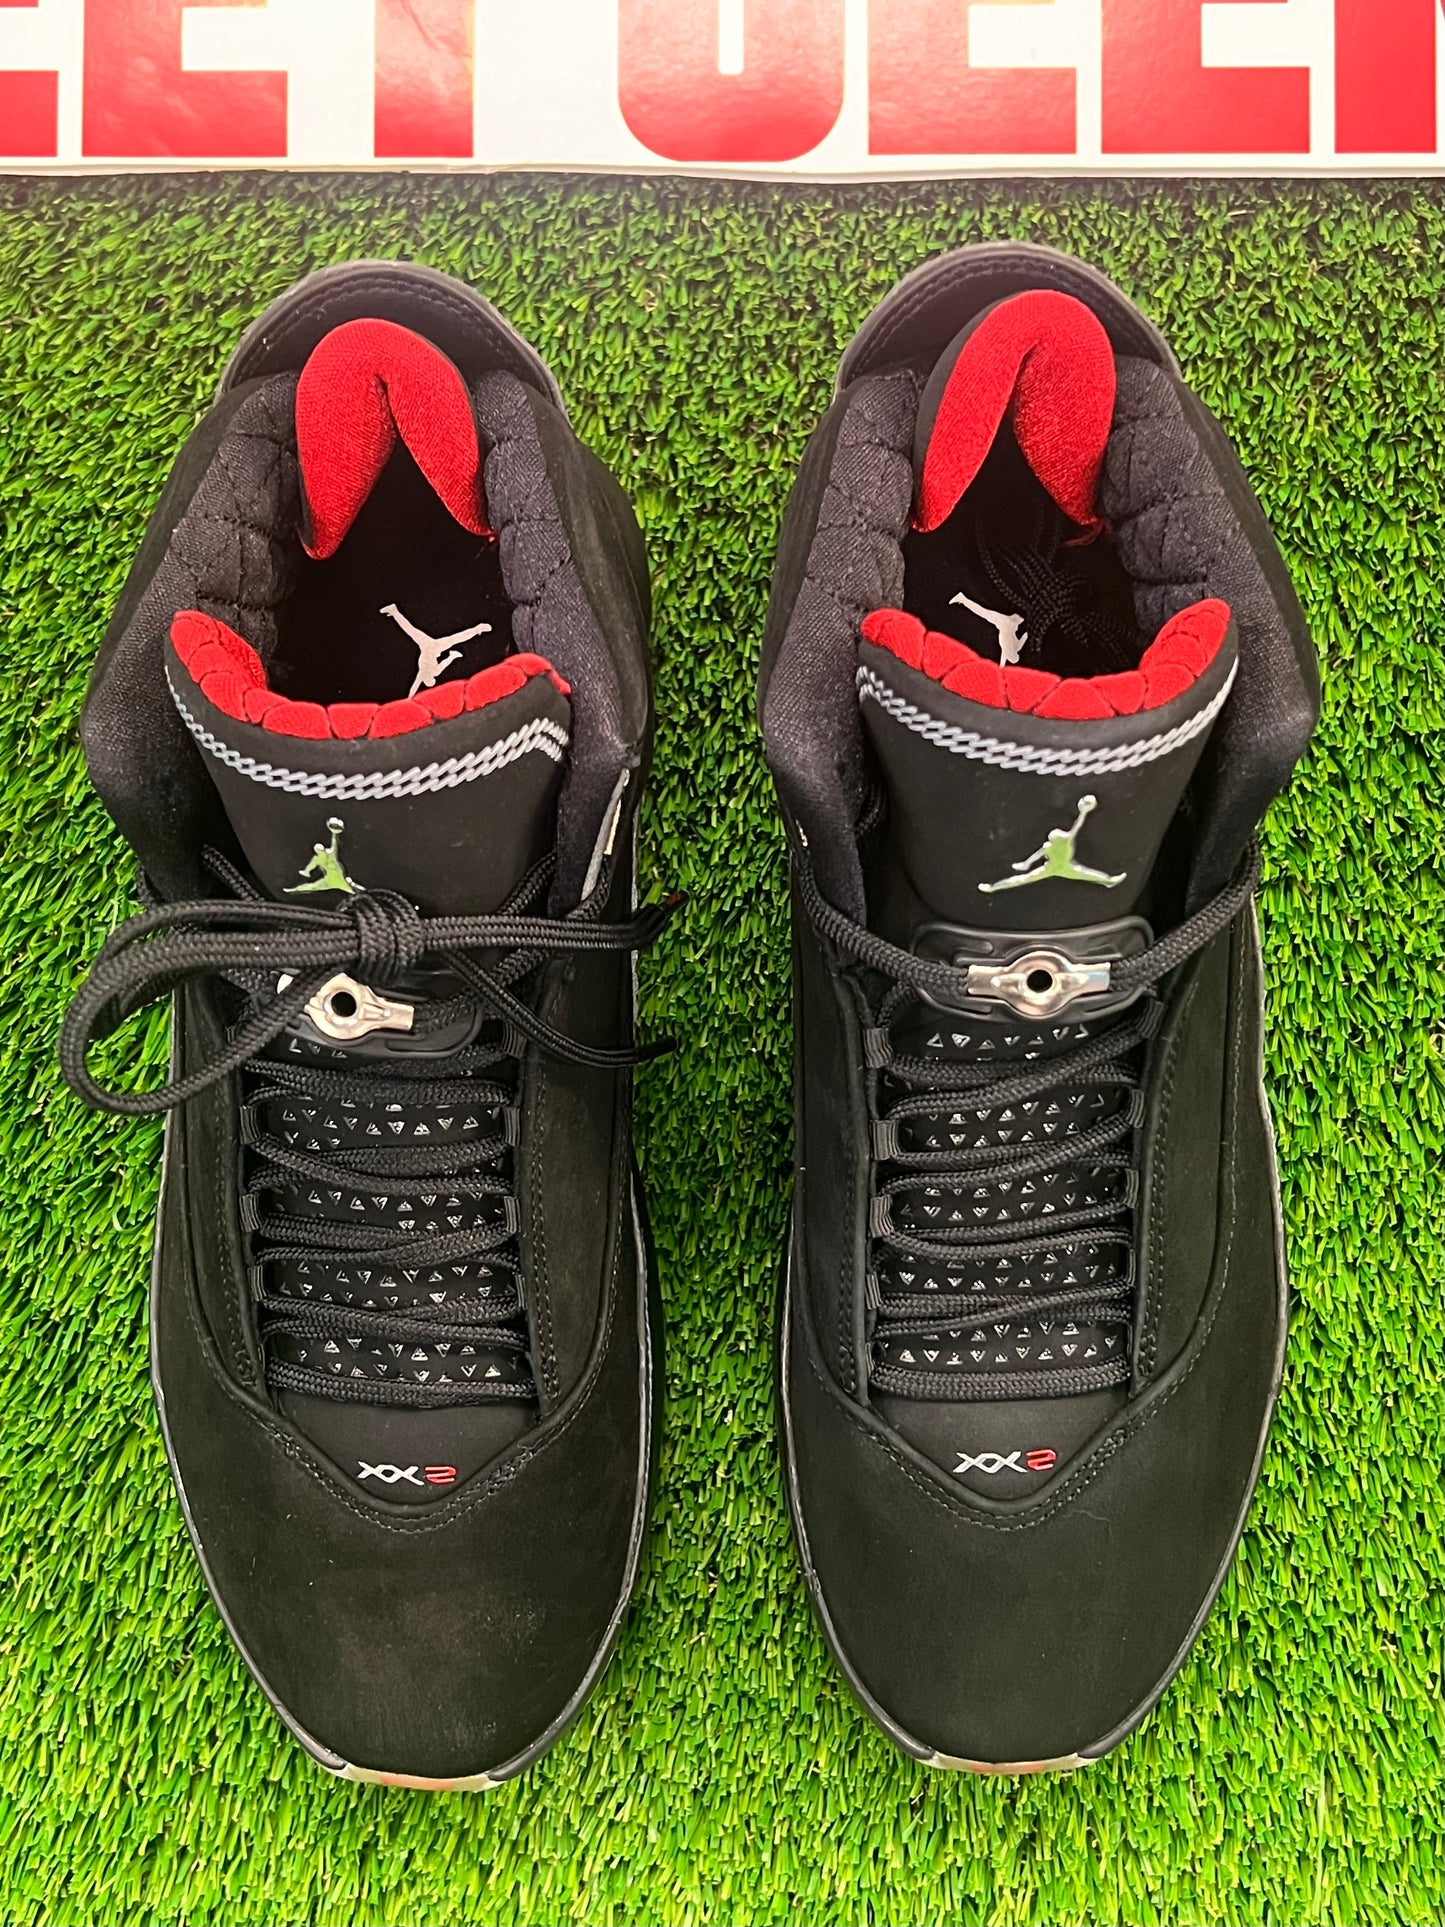 Men’s Air Jordan 22 Brand New Shoes